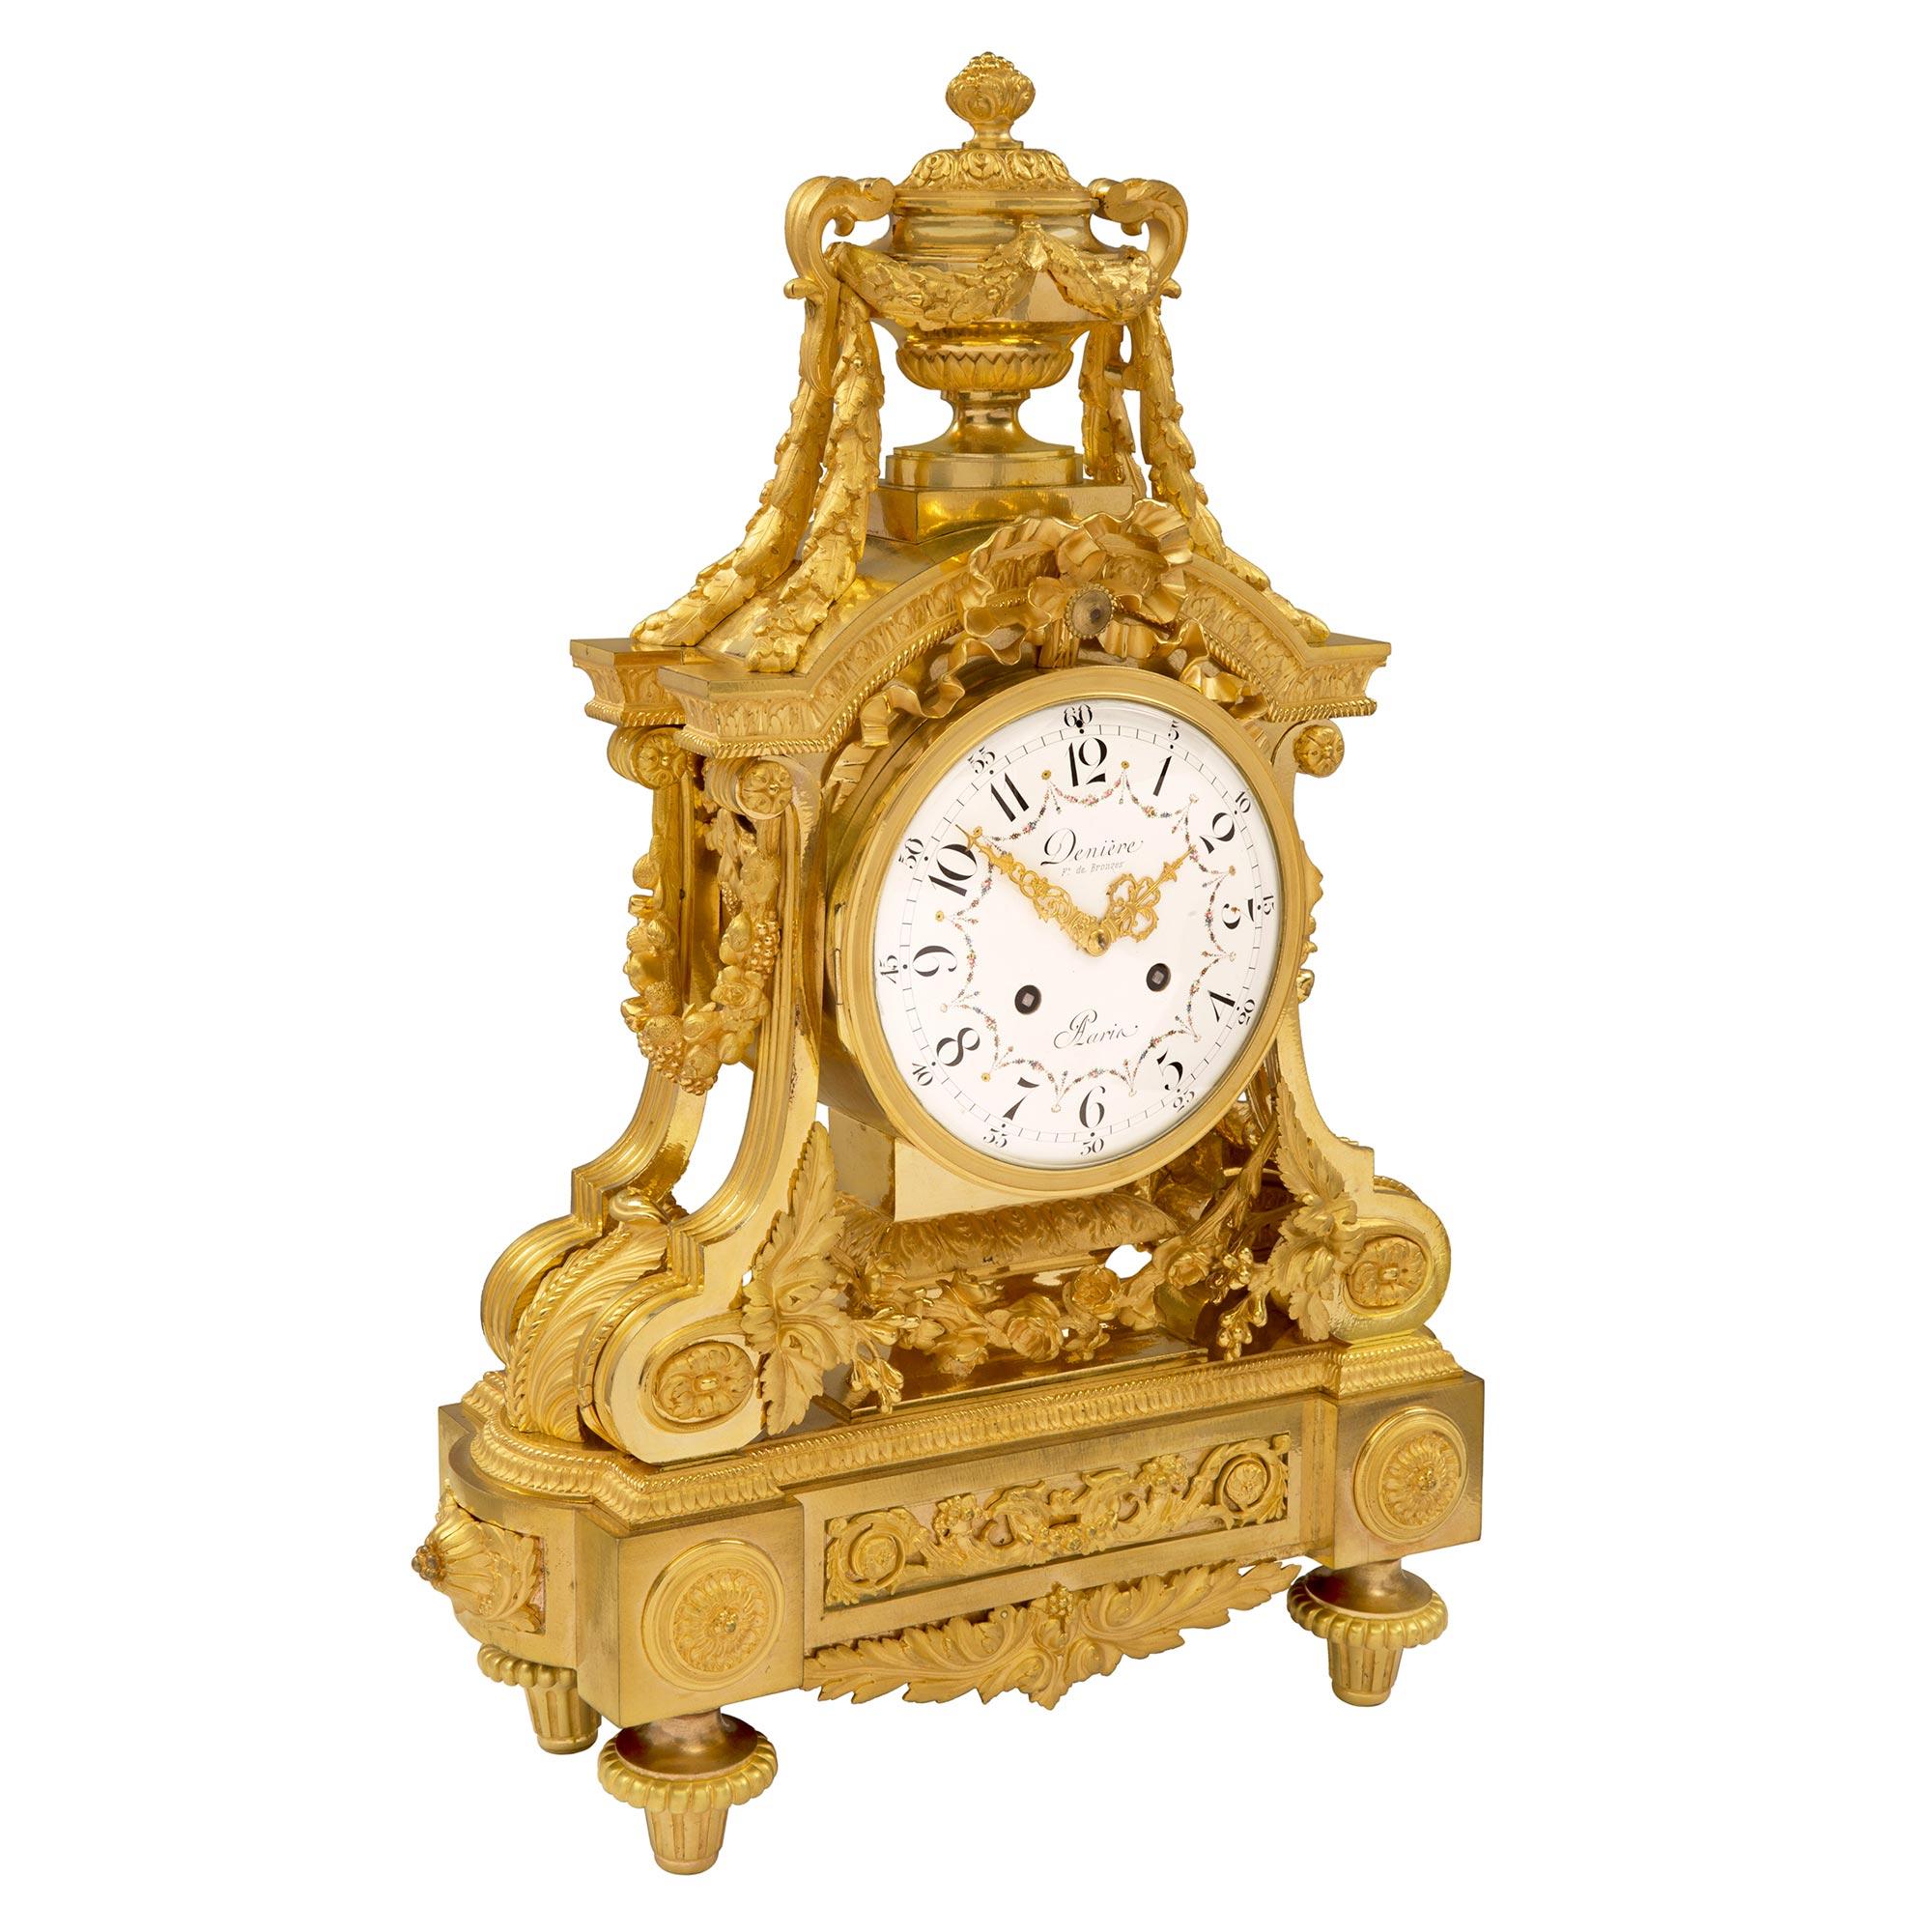 Eine atemberaubende Französisch 19. Jahrhundert Louis XVI st. Ormolu Uhr unterzeichnet von Denière. Die Uhr steht auf eleganten topieförmigen Füßen unter schönen Blockrosetten. In der Mitte befindet sich eine reich ziselierte, verschnörkelte,